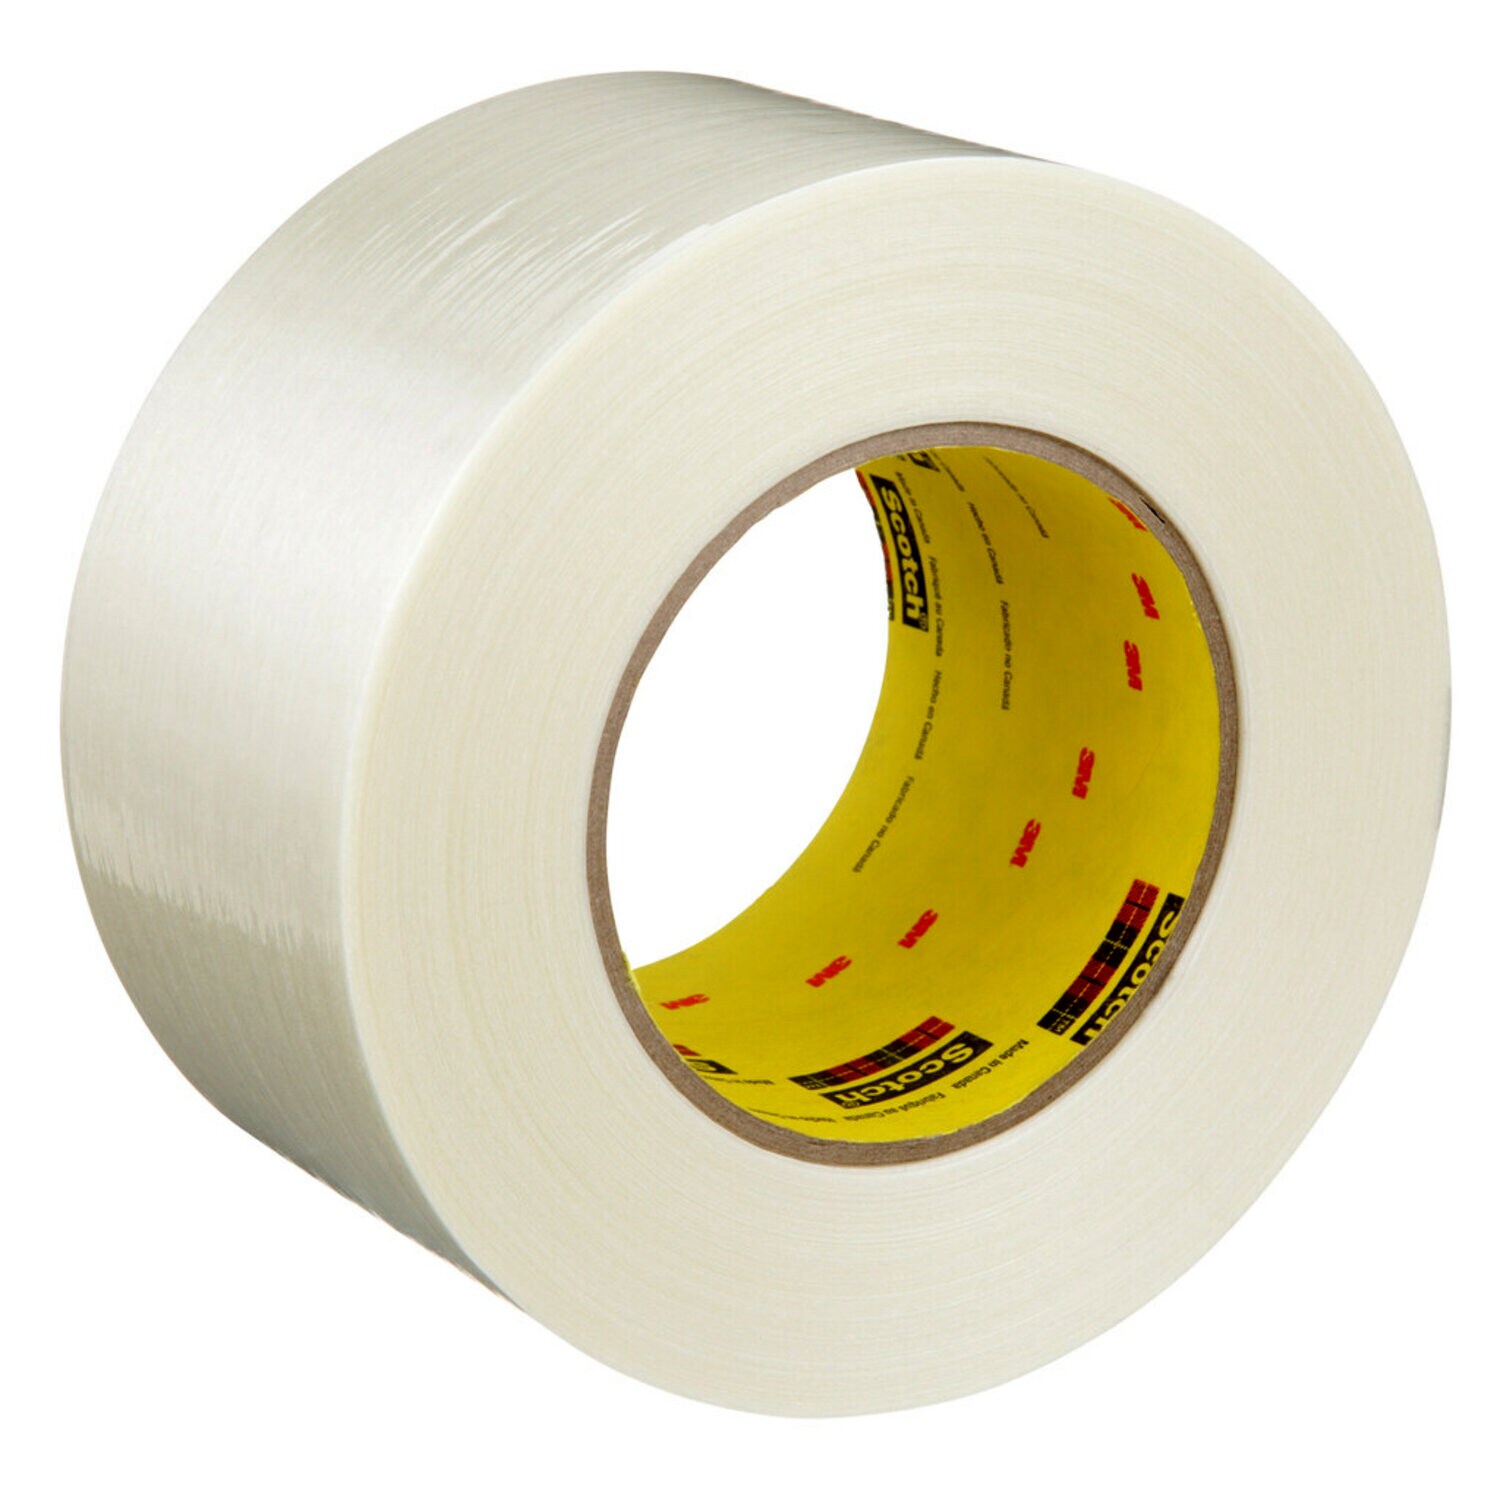 7100254842 - Scotch(R) Filament Tape 898, Clear, 72 mm x 330 m, 2 Roll/Case